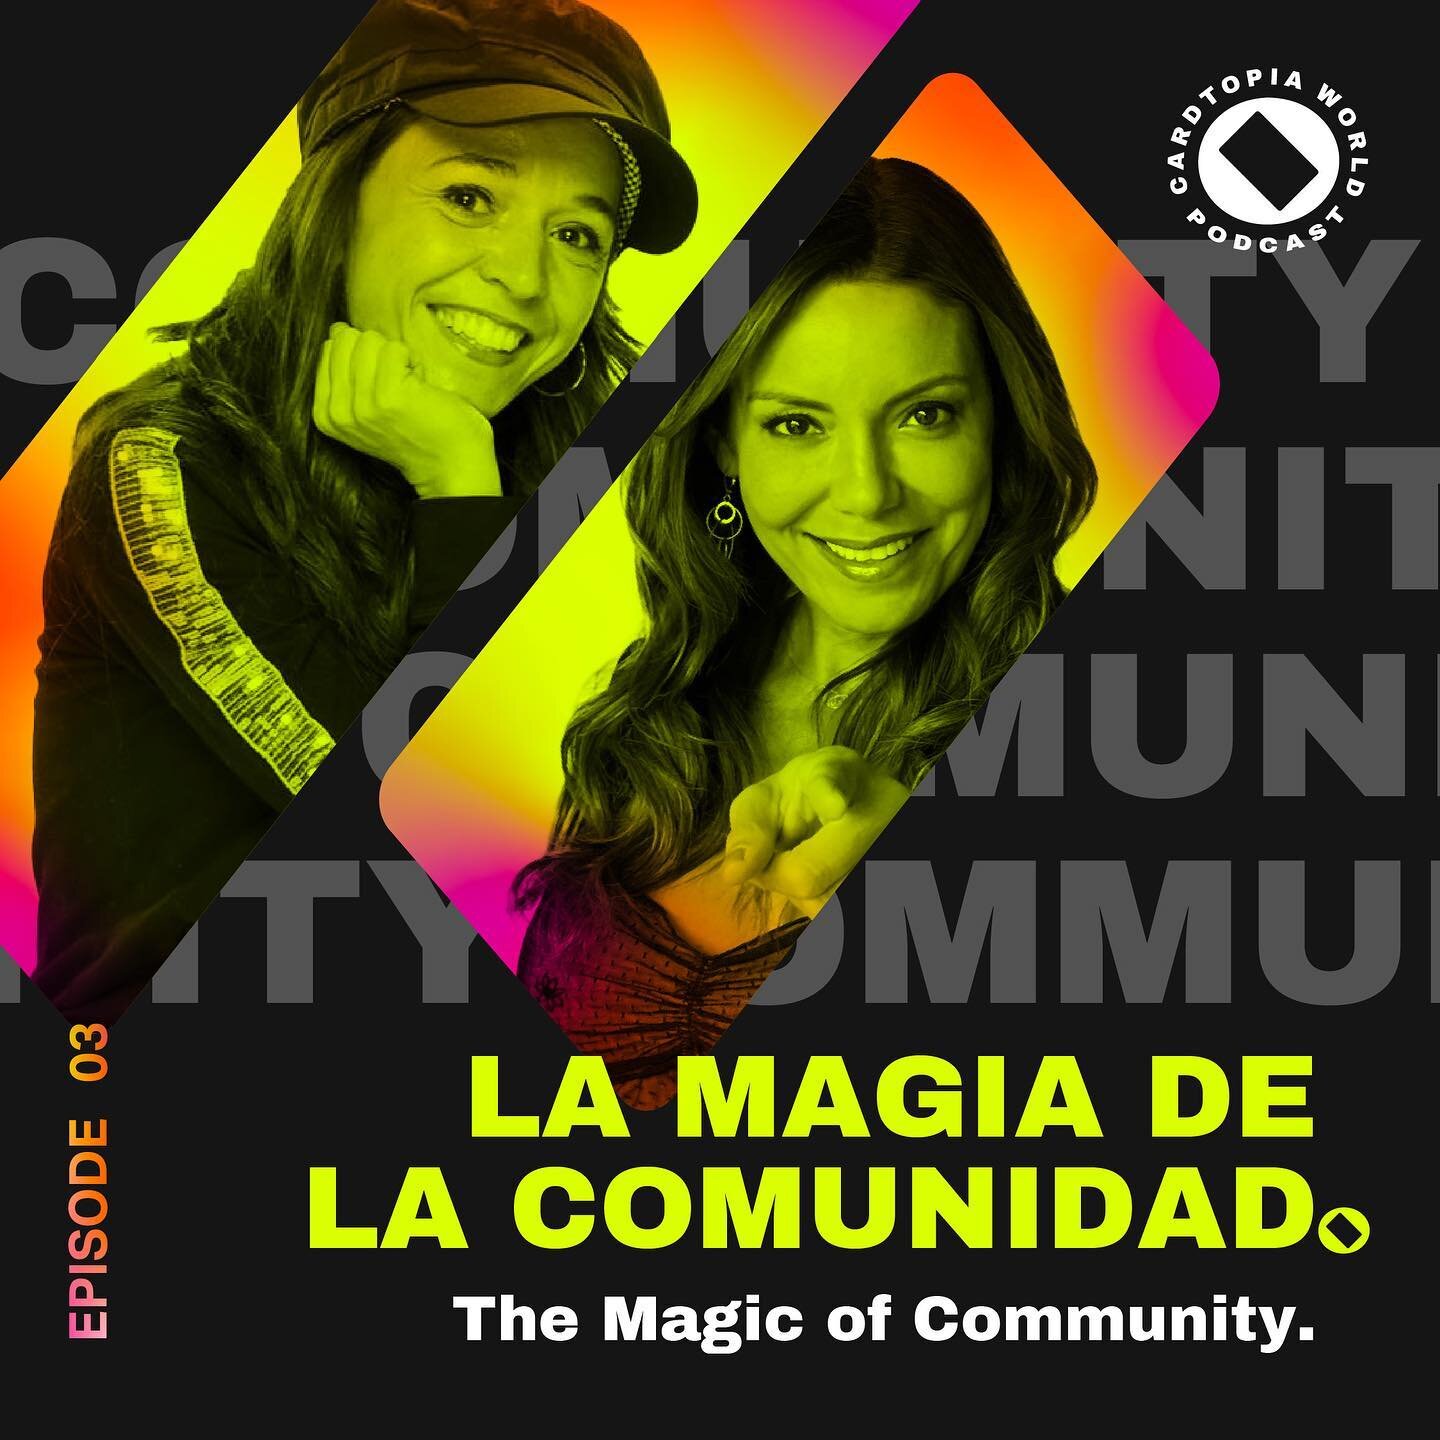 🎙 Cardtopia World Podcast - Episode 3: &quot;La Magia de la Comunidad&quot; (The Magic of Community) 👩🏼&zwj;🤝&zwj;👨🏿👩🏽&zwj;🤝&zwj;👨🏻

In this third episode of the #CardtopiaWorldPodcast entitled &quot;La Magia de la Comunidad&quot; (The Mag